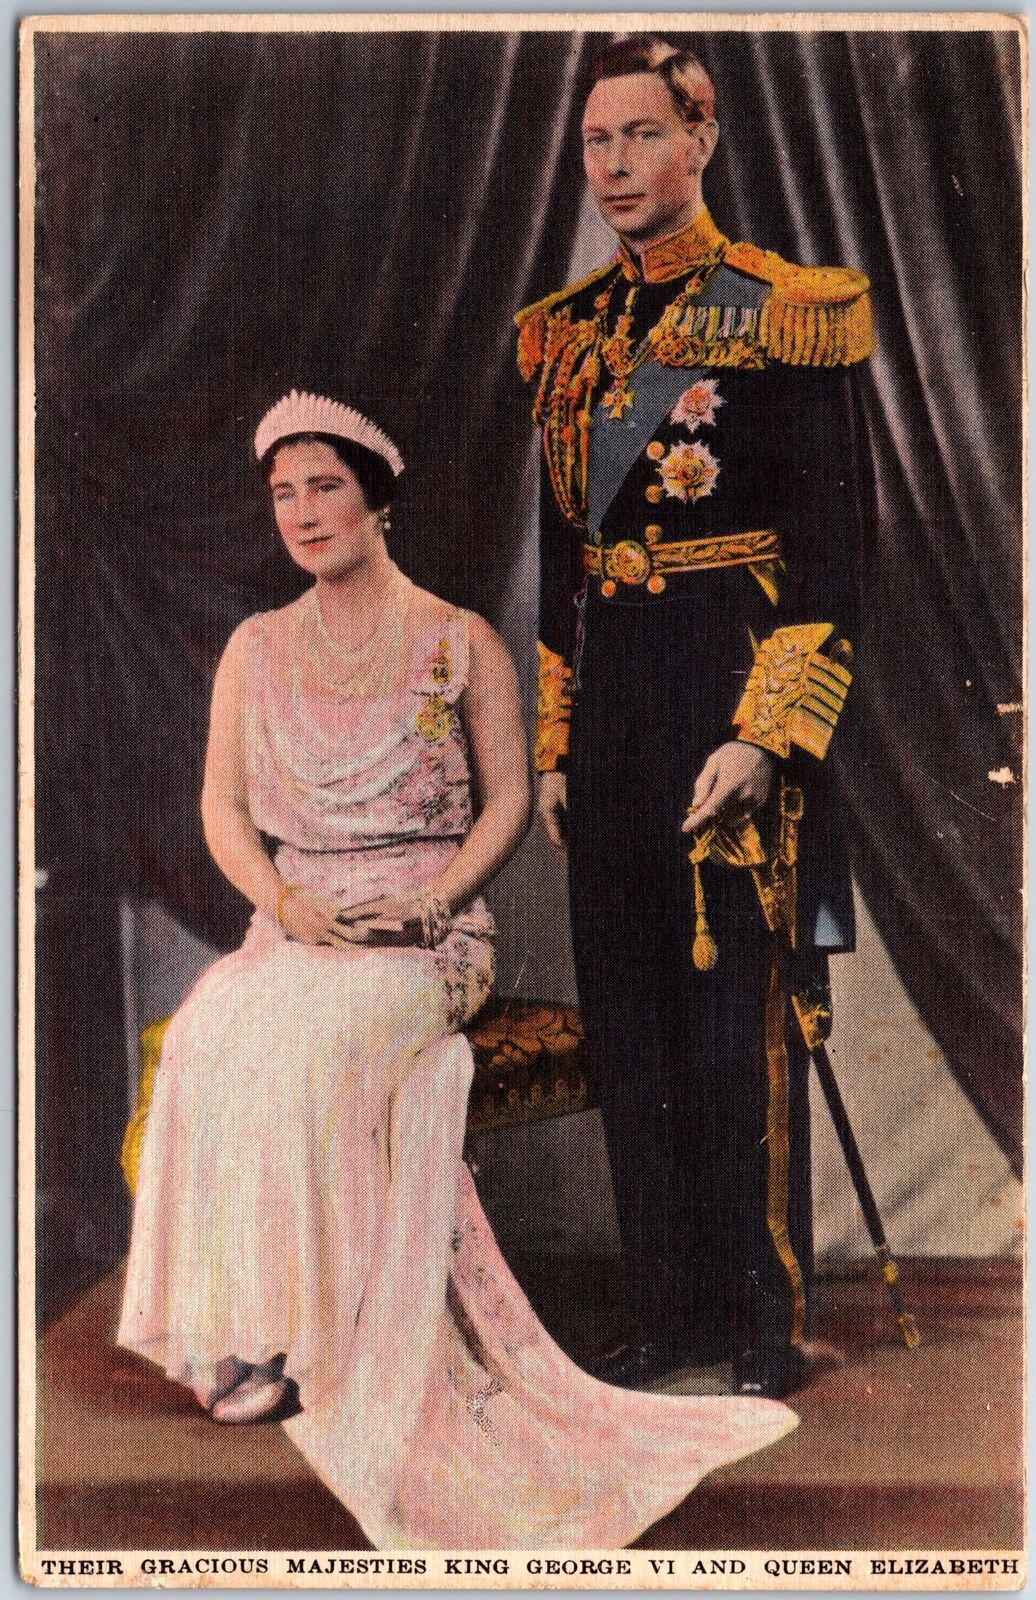 VINTAGE POSTCARD THEIR GRACIOUS MAJESTIES KING GEORGE VI & QUEEN ELIZABETH c1938